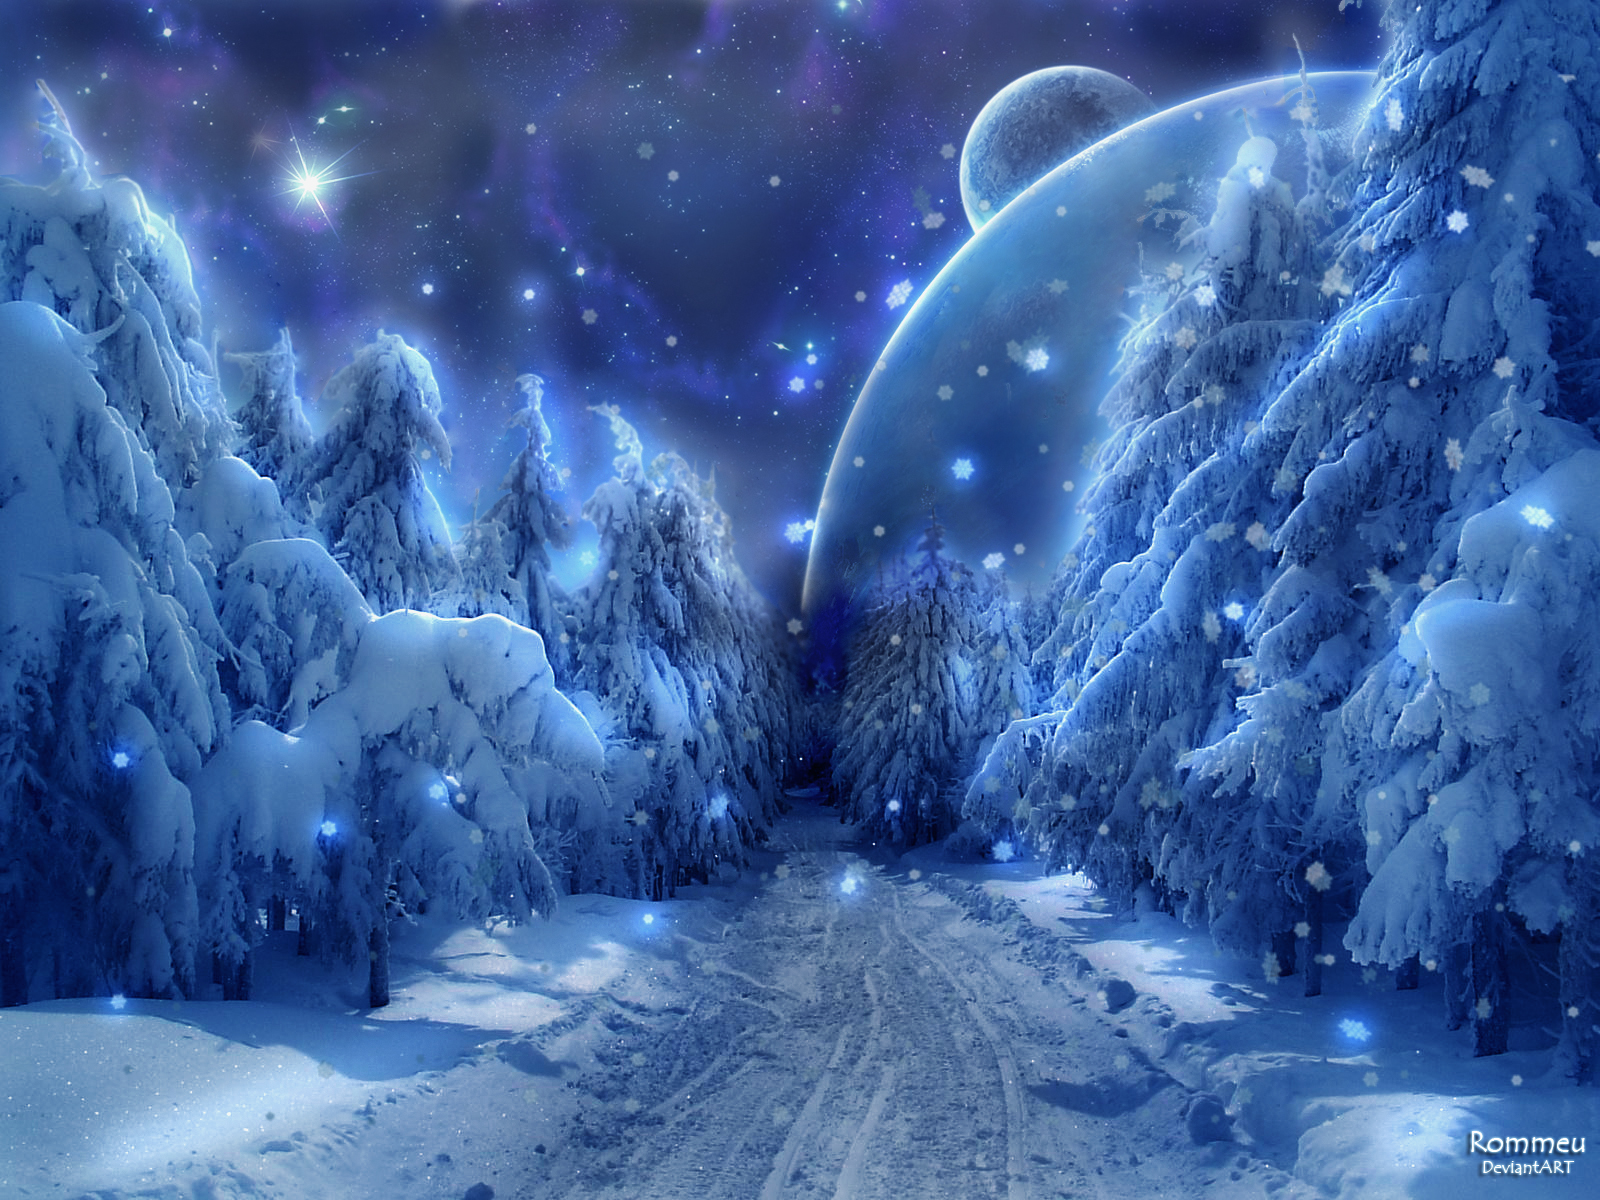 Hình nền tuyết hoa cùng với những quả tuyết trắng xóa và những cây thông Noel trang trí, tất cả cùng nhau tạo nên những bức hình nền tuyệt đẹp và ấn tượng. Thay đổi hình nền của bạn với những bức ảnh tuyết để gia tăng tính giáng sinh và tạo cảm hứng cho ngày tết sắp đến.